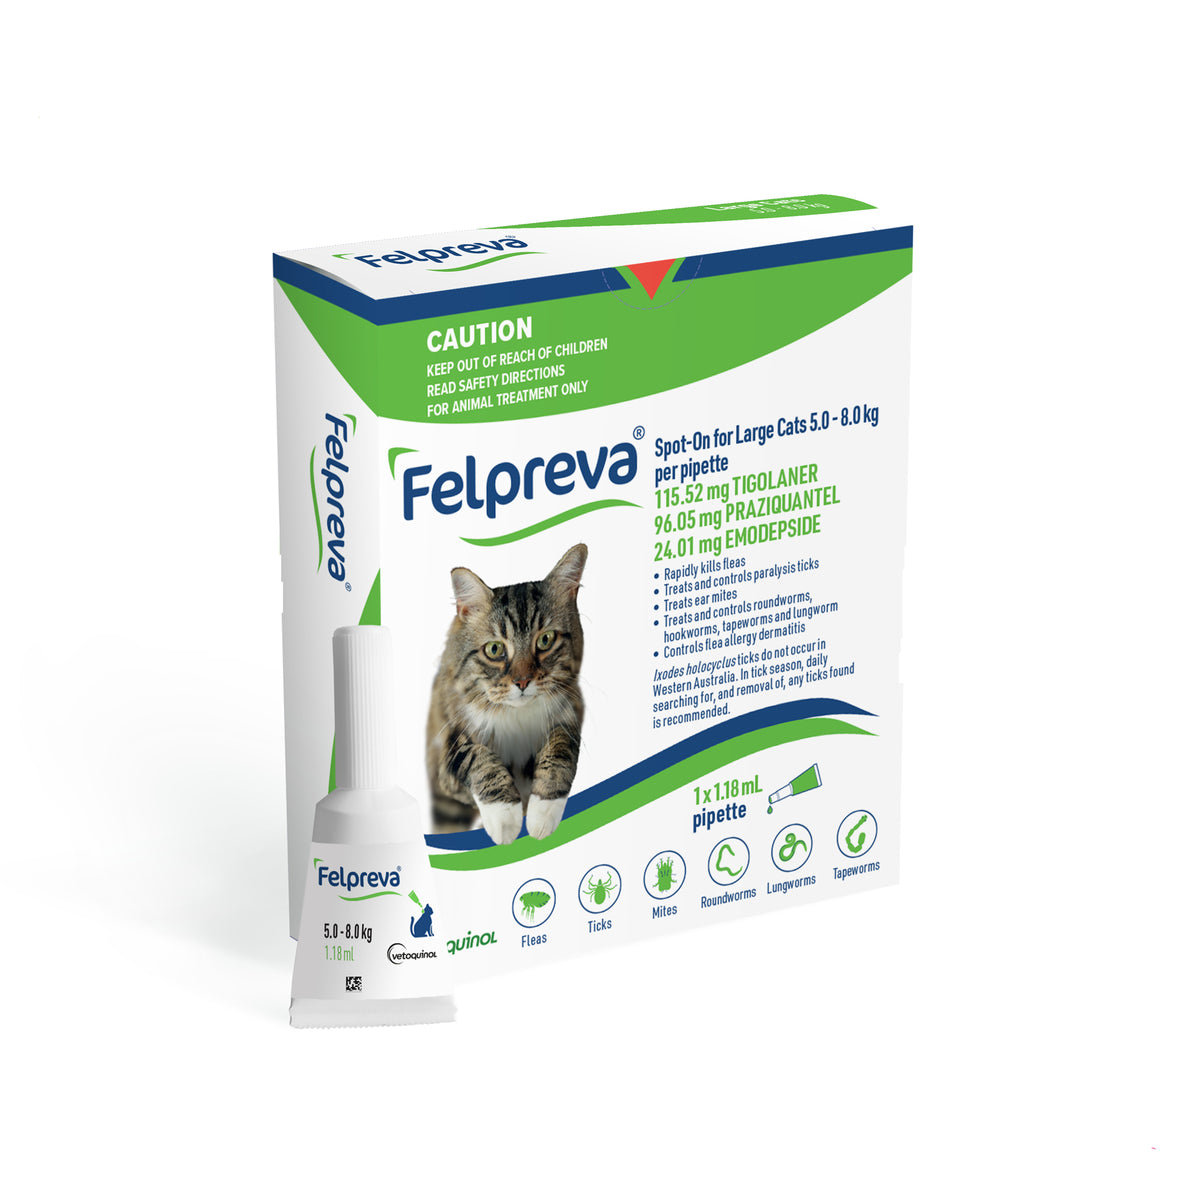 Felpreva Spot-On for Large Cats 5-8kg